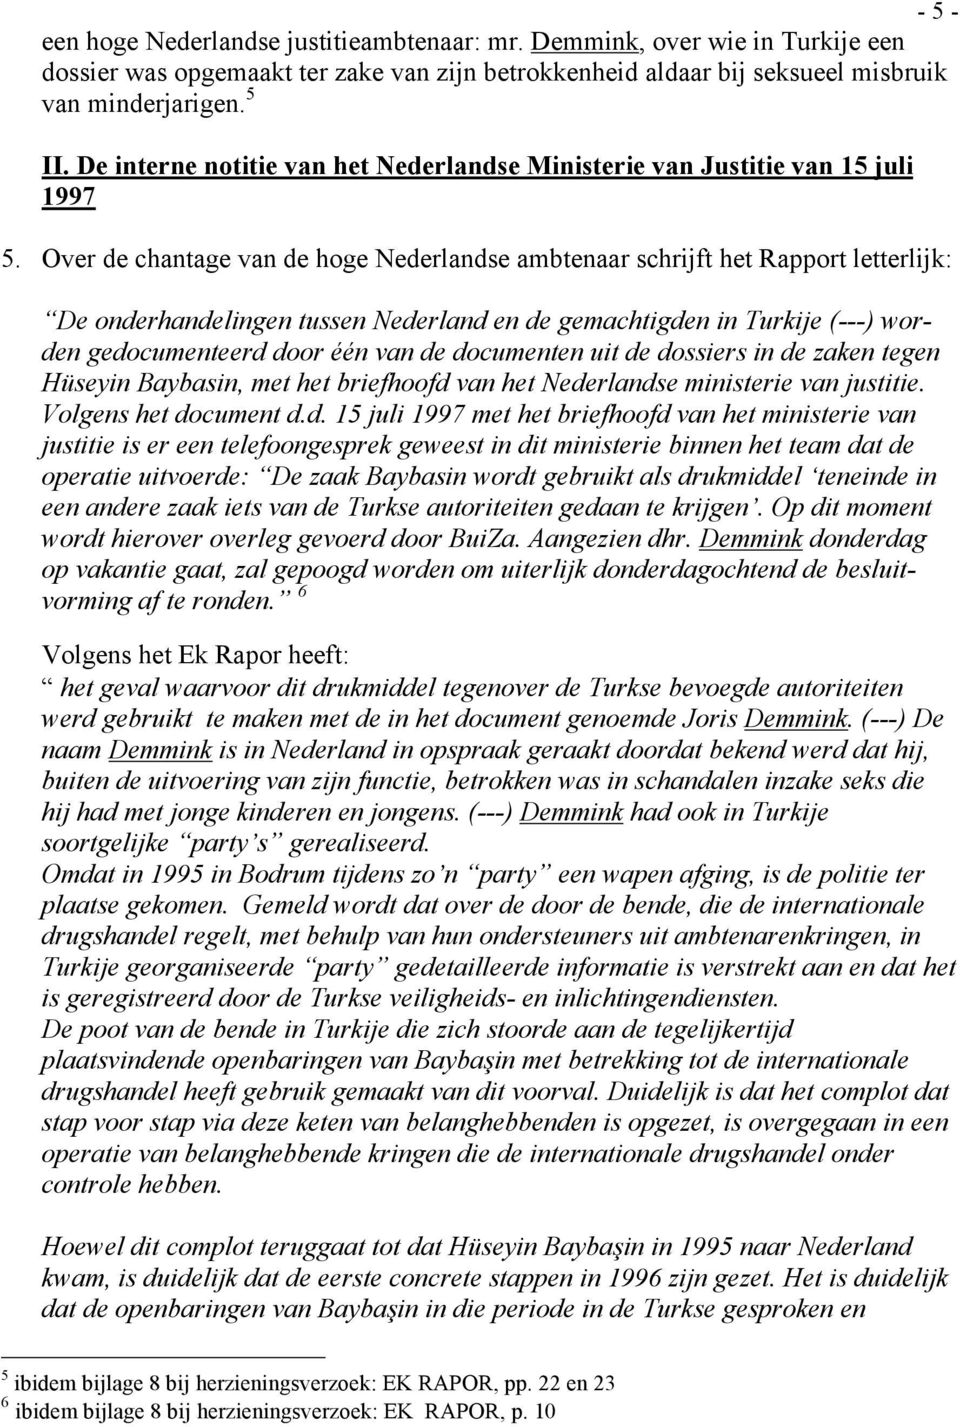 Over de chantage van de hoge Nederlandse ambtenaar schrijft het Rapport letterlijk: De onderhandelingen tussen Nederland en de gemachtigden in Turkije (---) worden gedocumenteerd door één van de